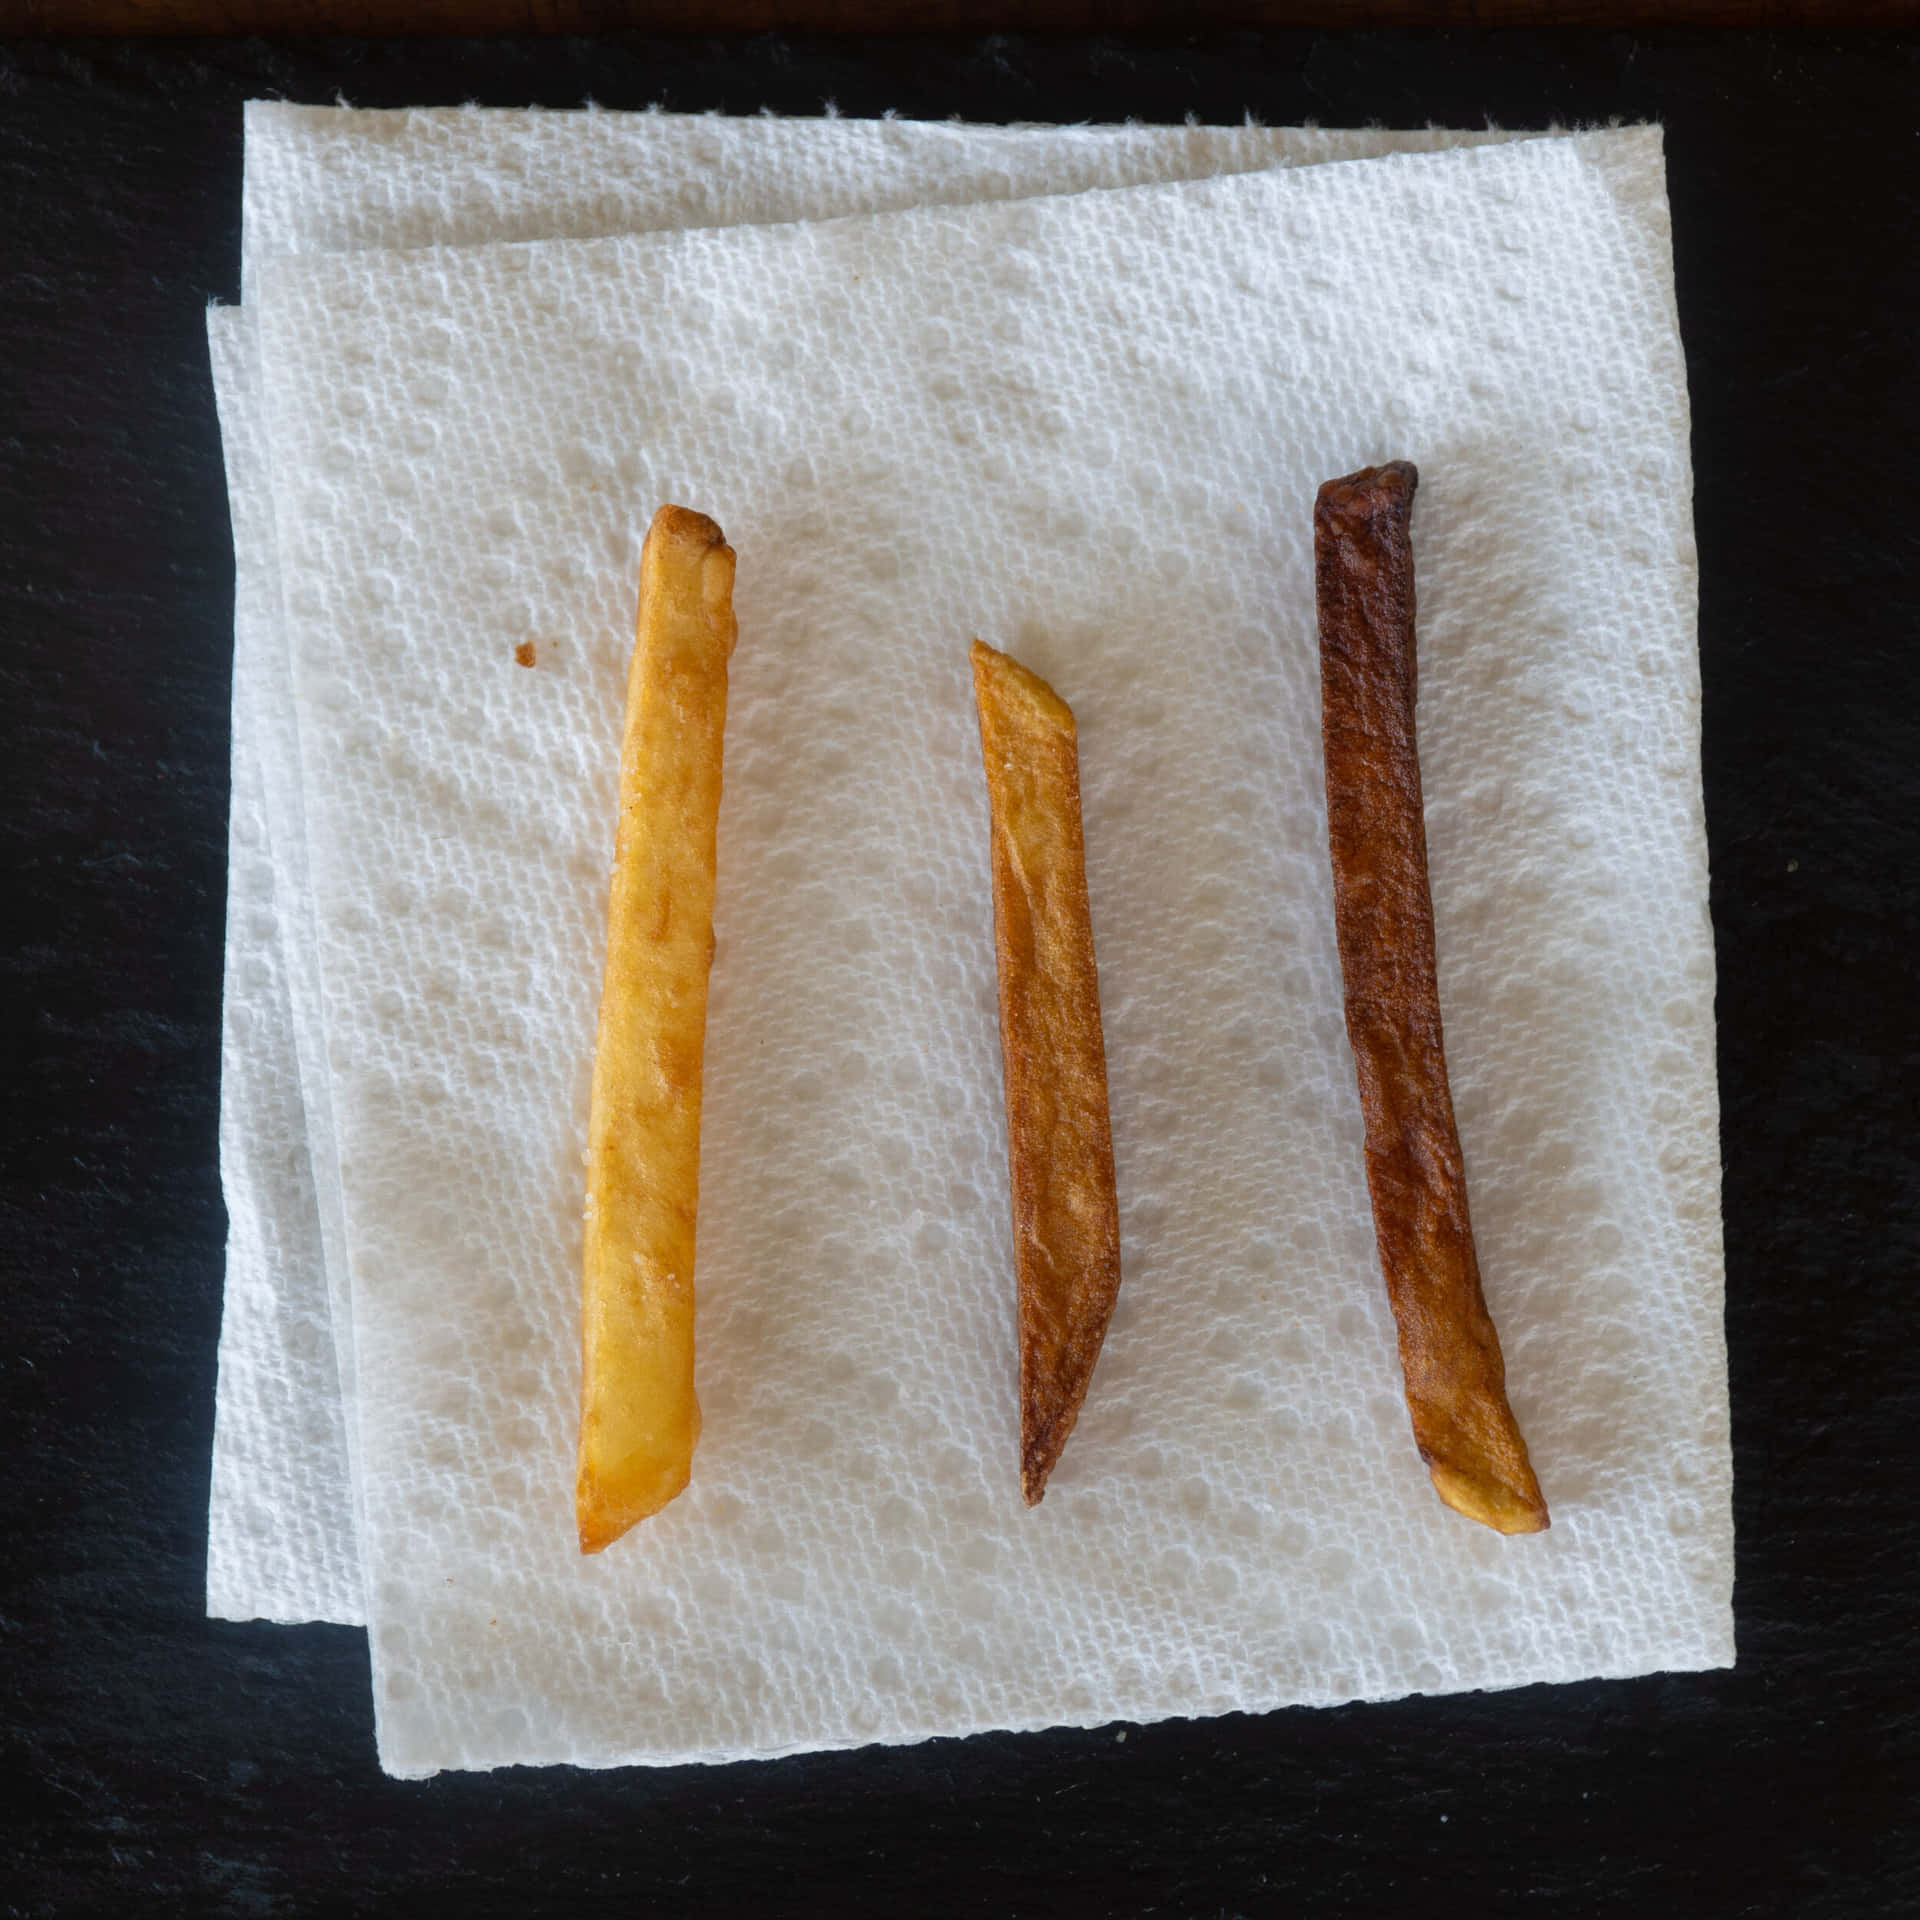 Ettfärgglatt Urval Av Pommes Frites - Perfekt För Ett Snacksanfall!